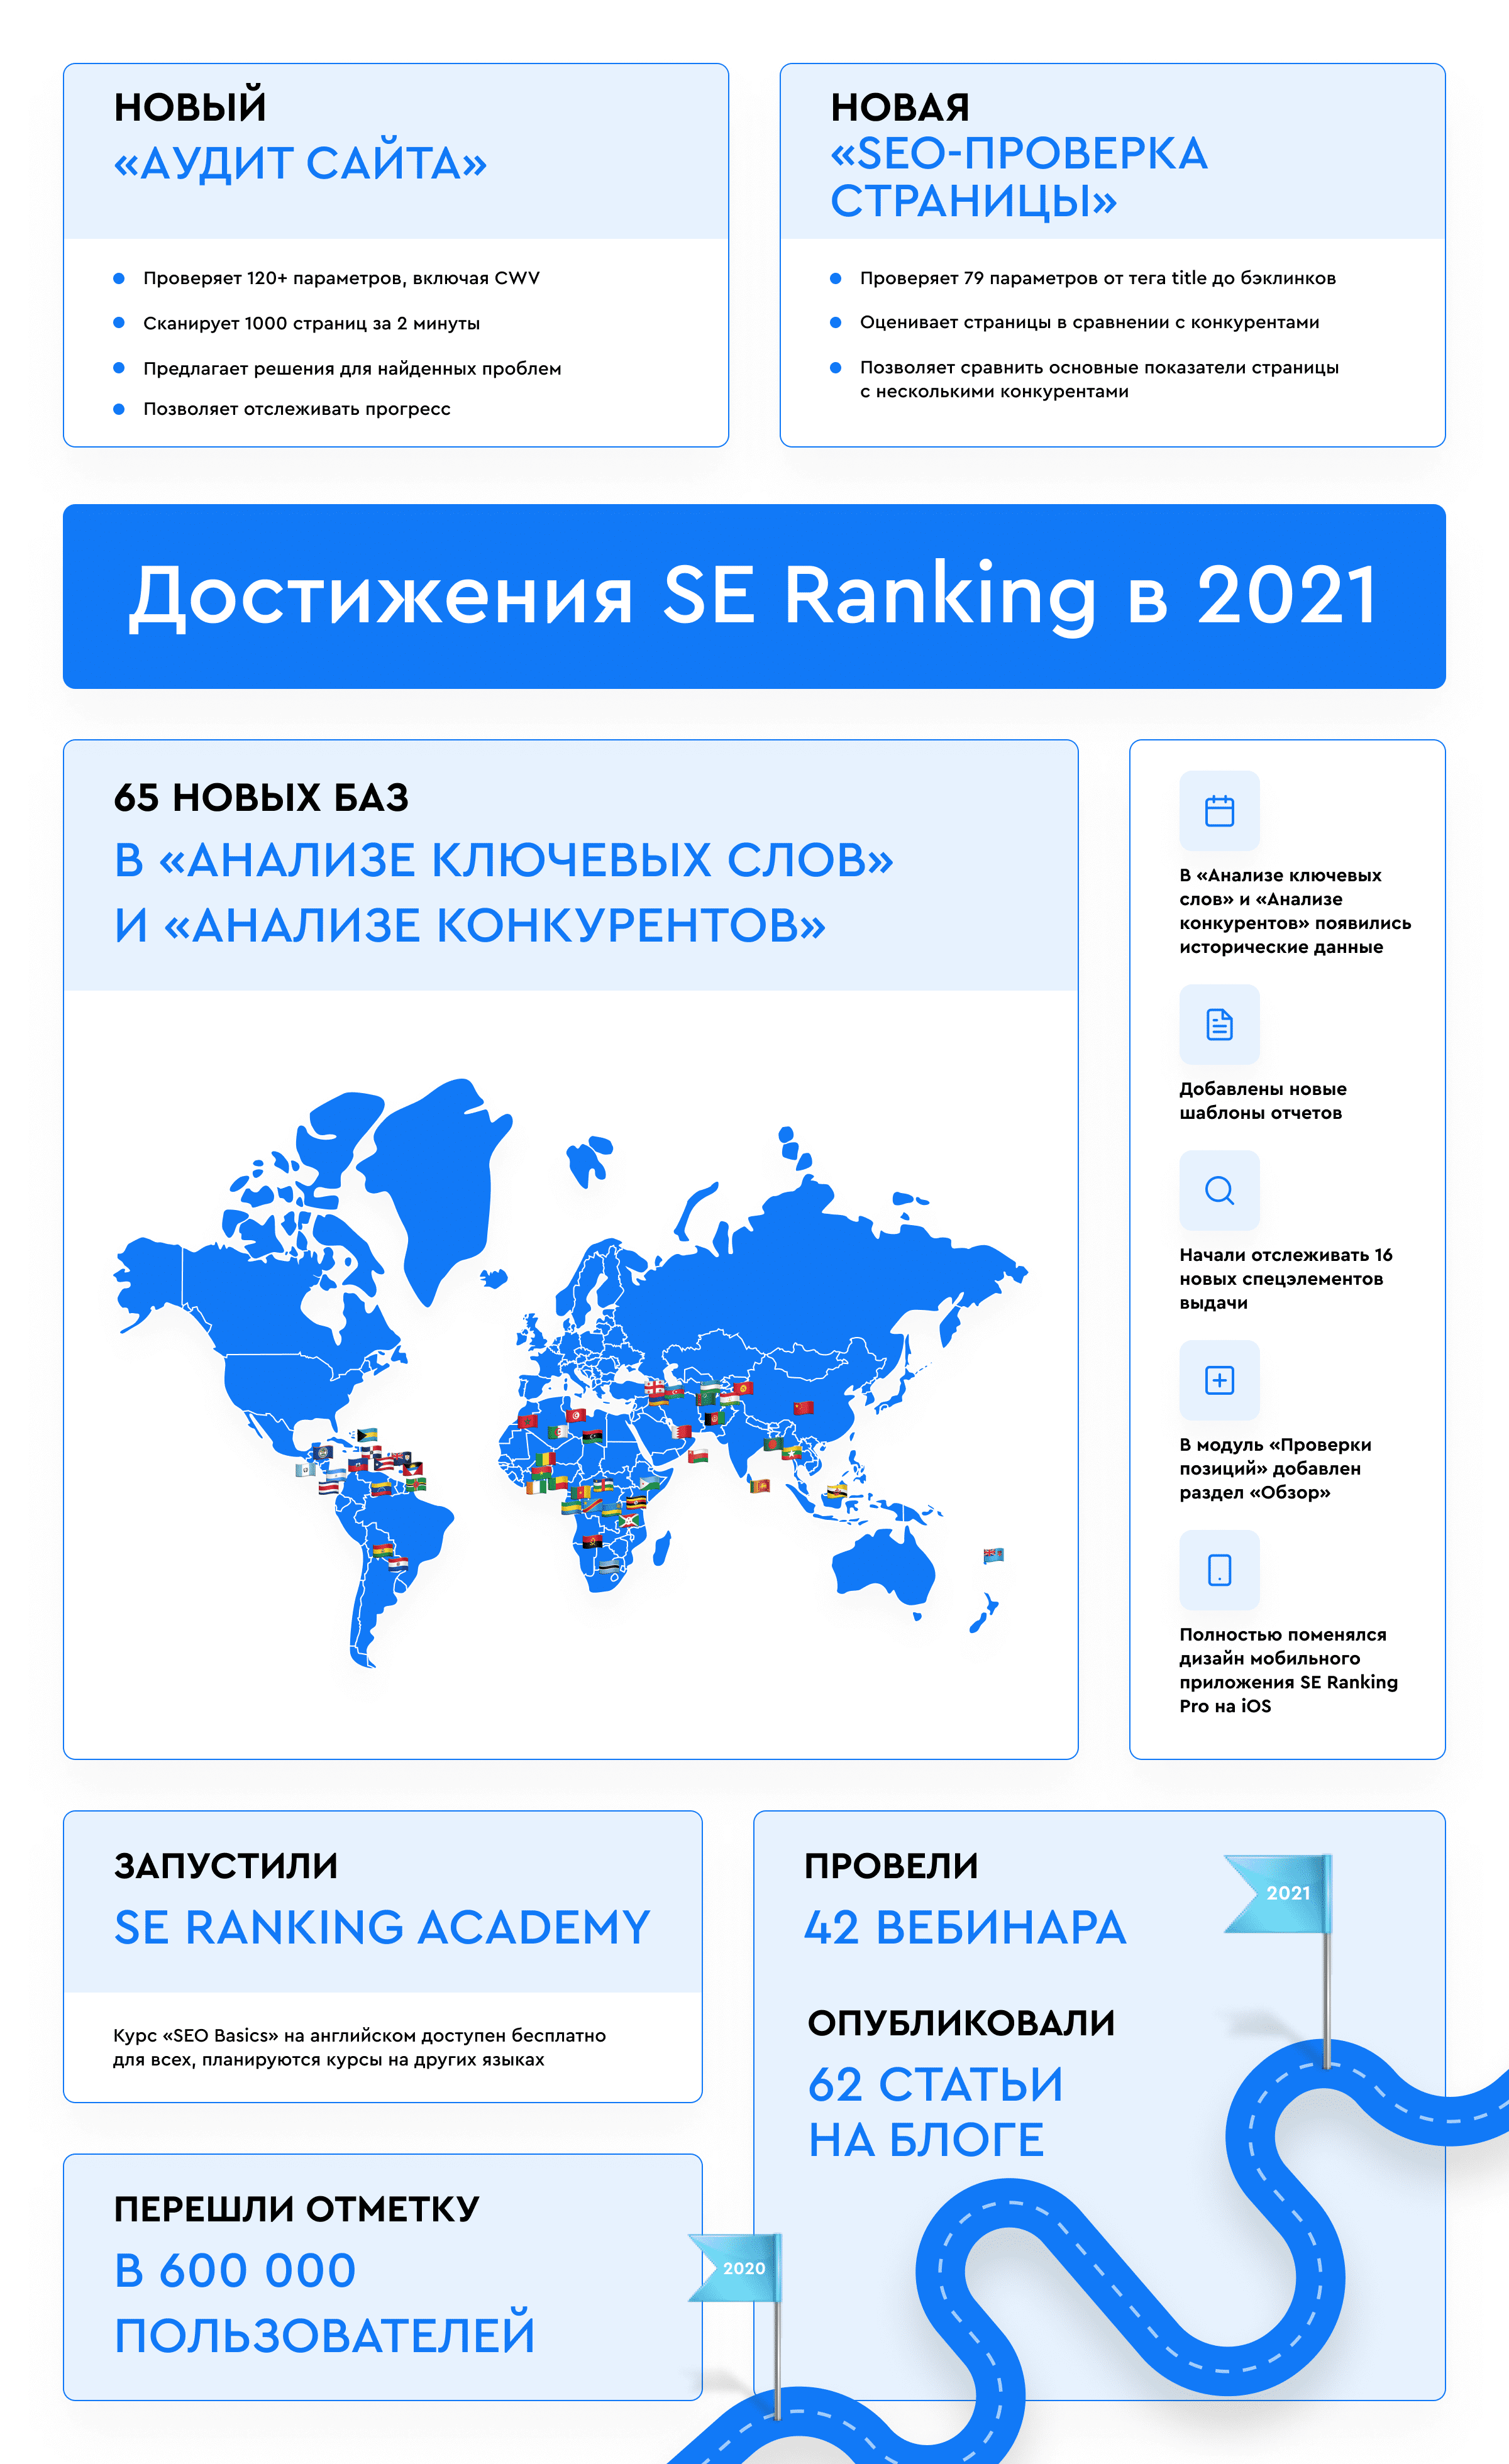 Достижения SE Ranking в 2021 году